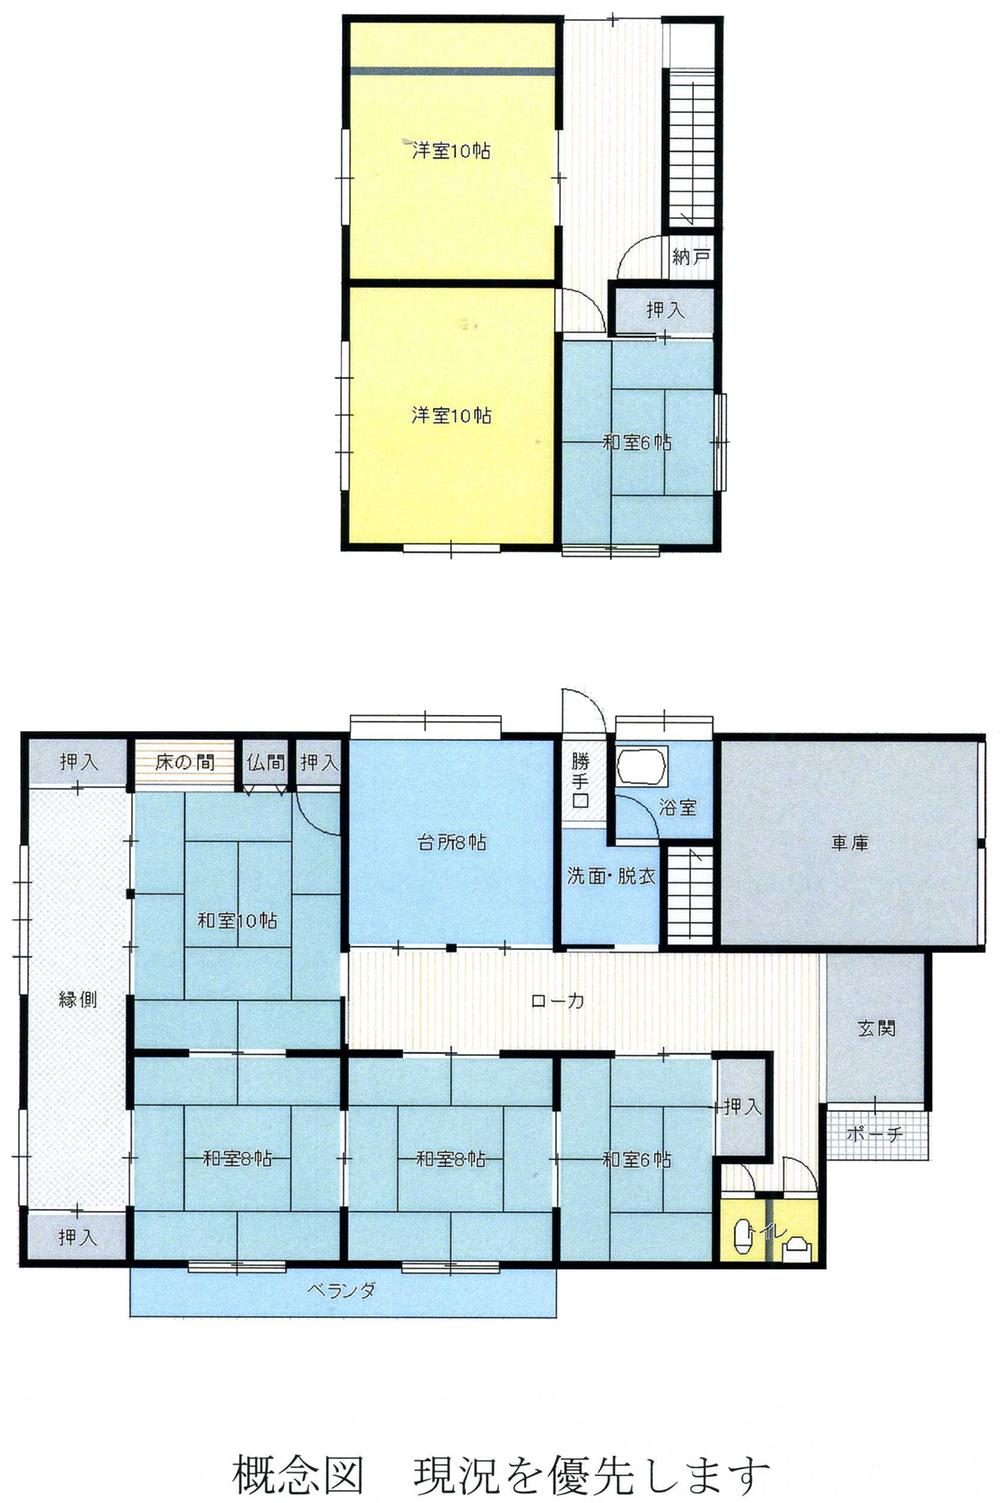 Floor plan. 8 million yen, 7DK, Land area 534 sq m , Building area 196.66 sq m